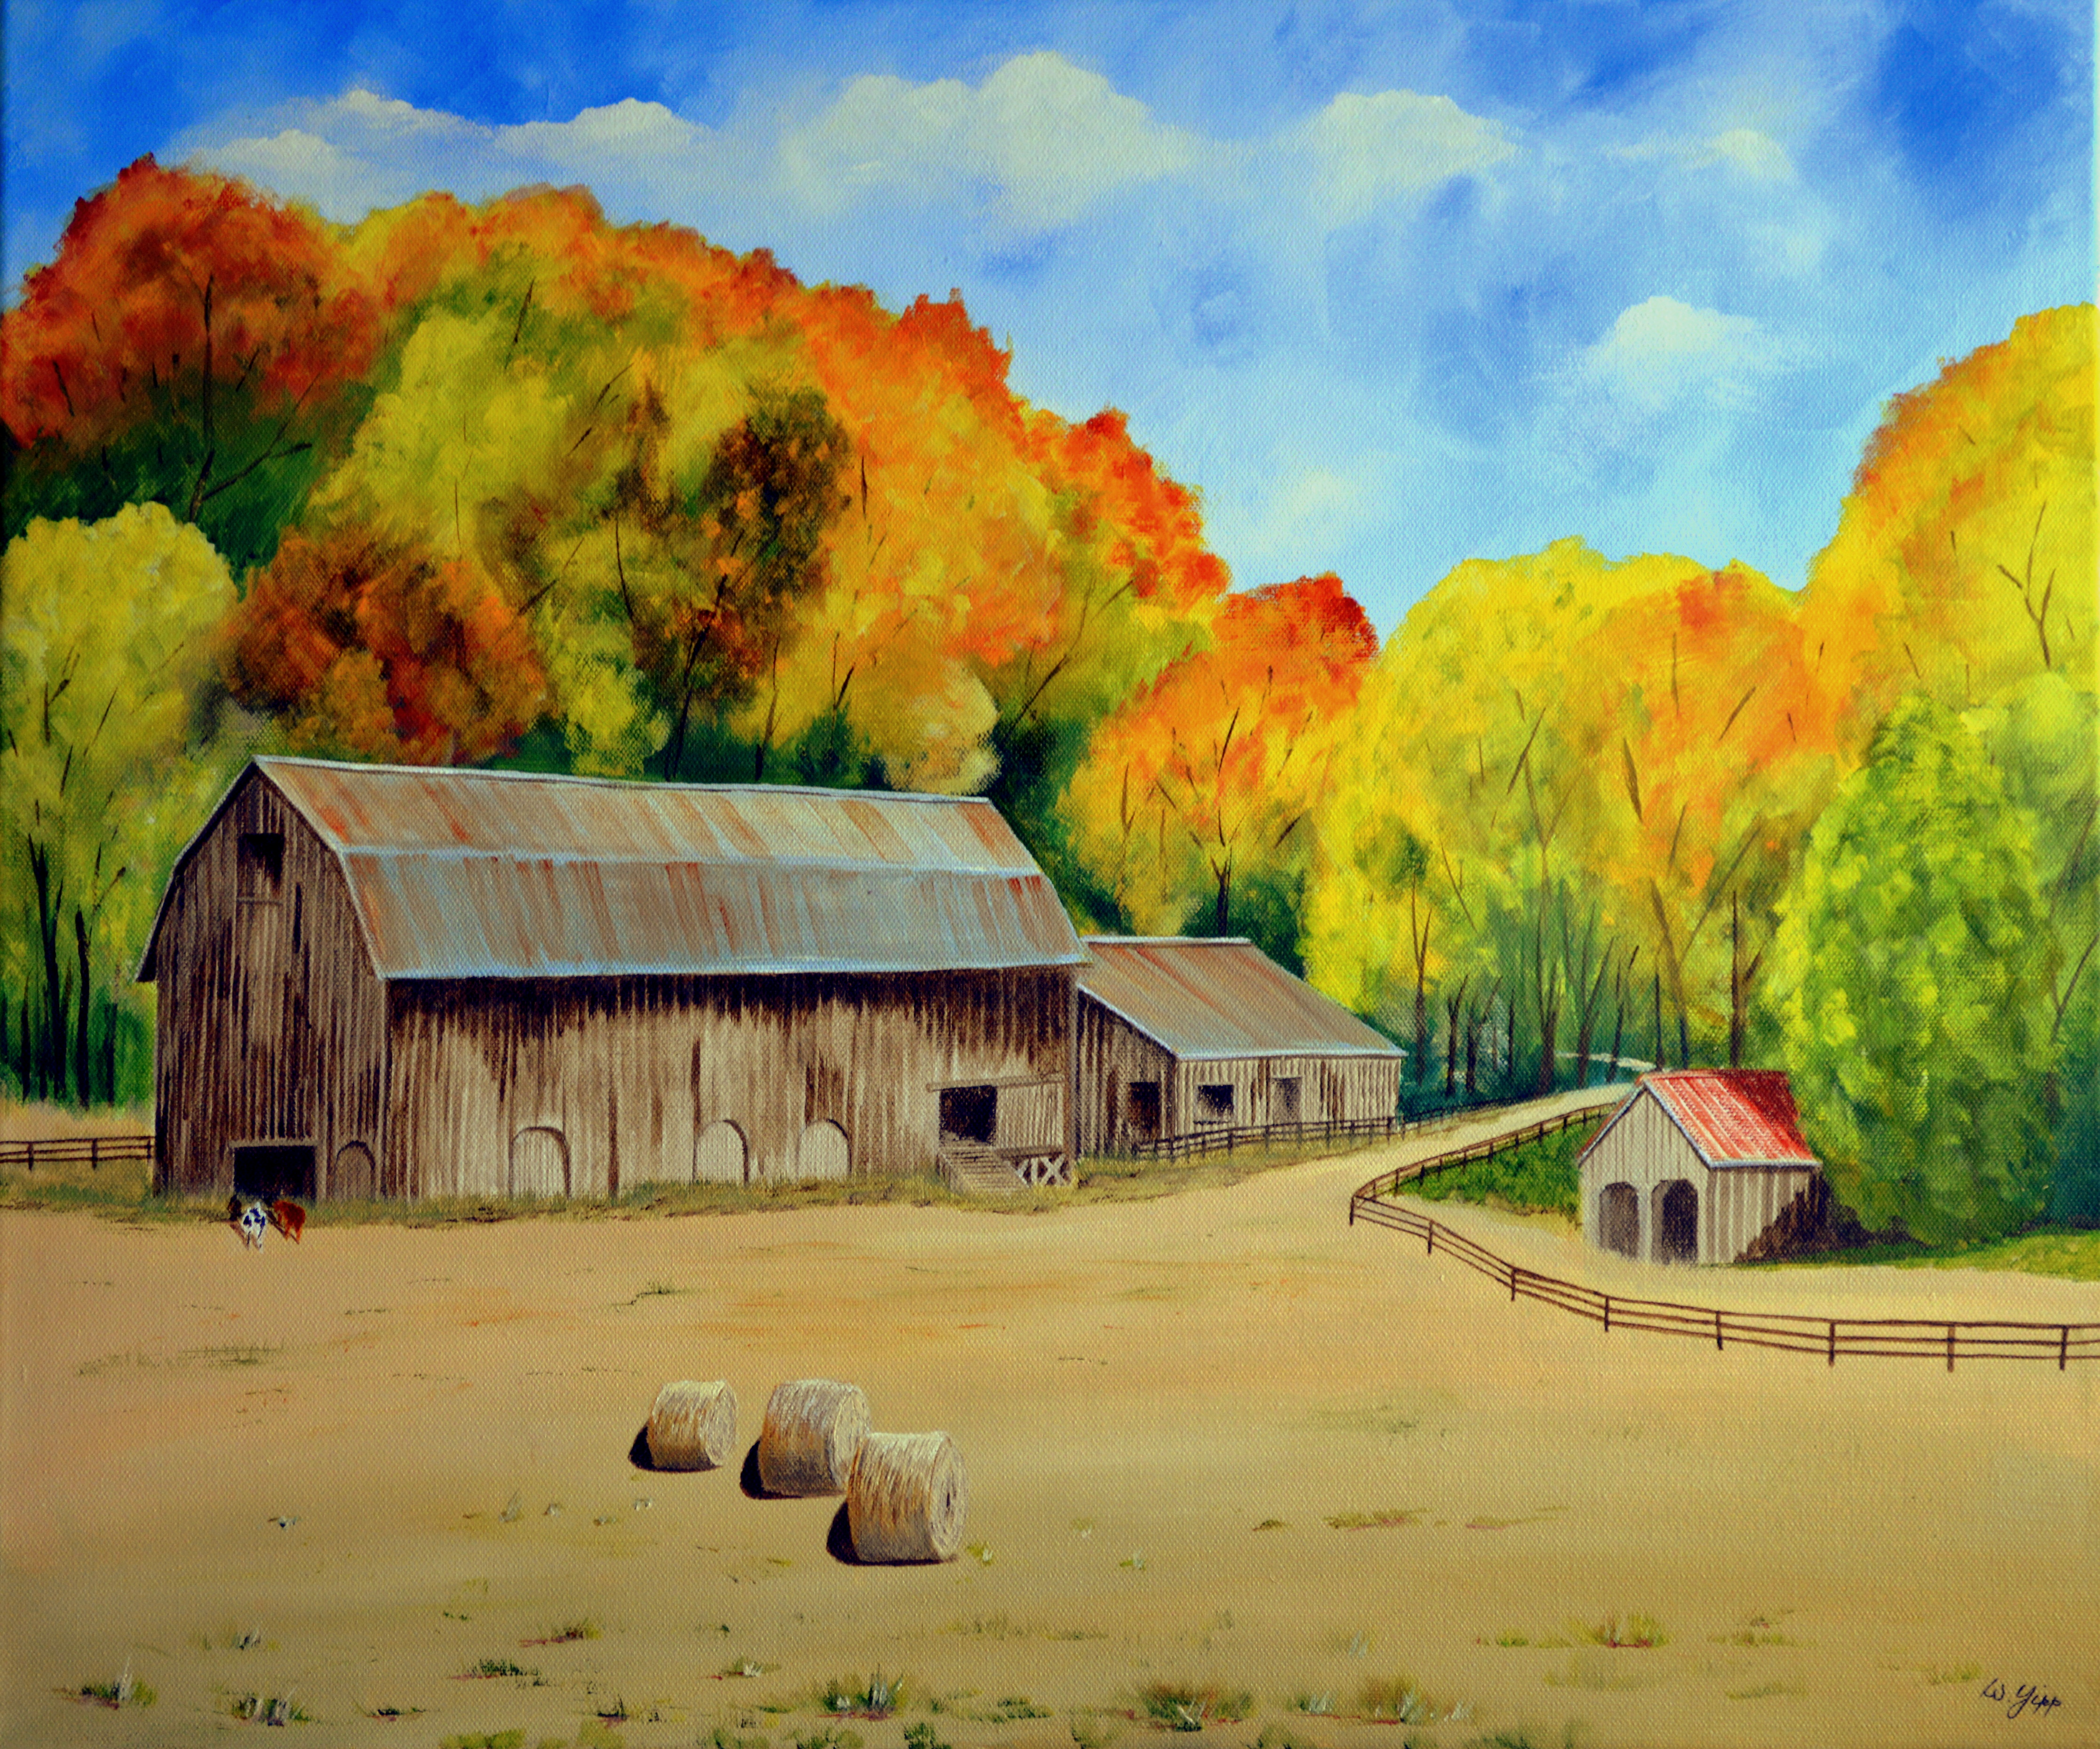 Wallpaper, autumn, farmhouse, barn, painting, country, upstateny, imageofharmony 4465x3718